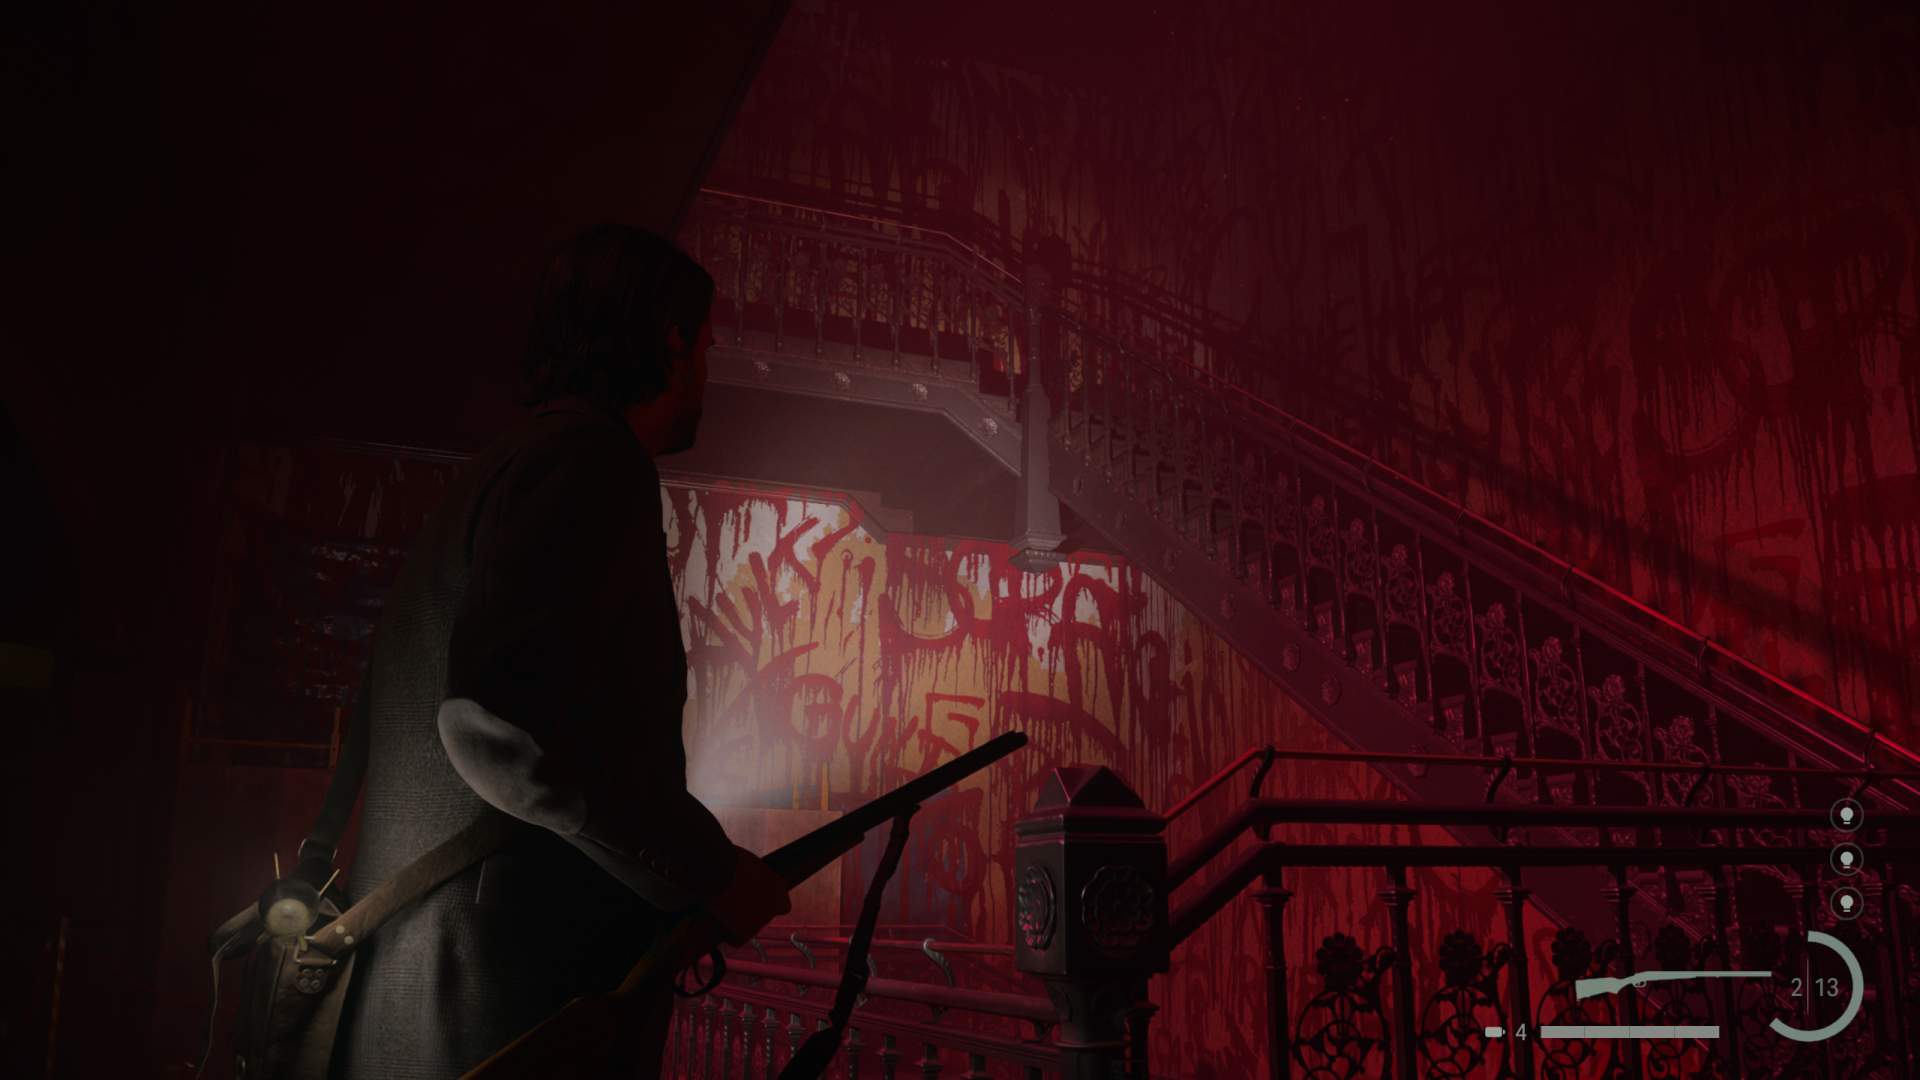 Review Alan Wake 2: não acabe, doce pesadelo